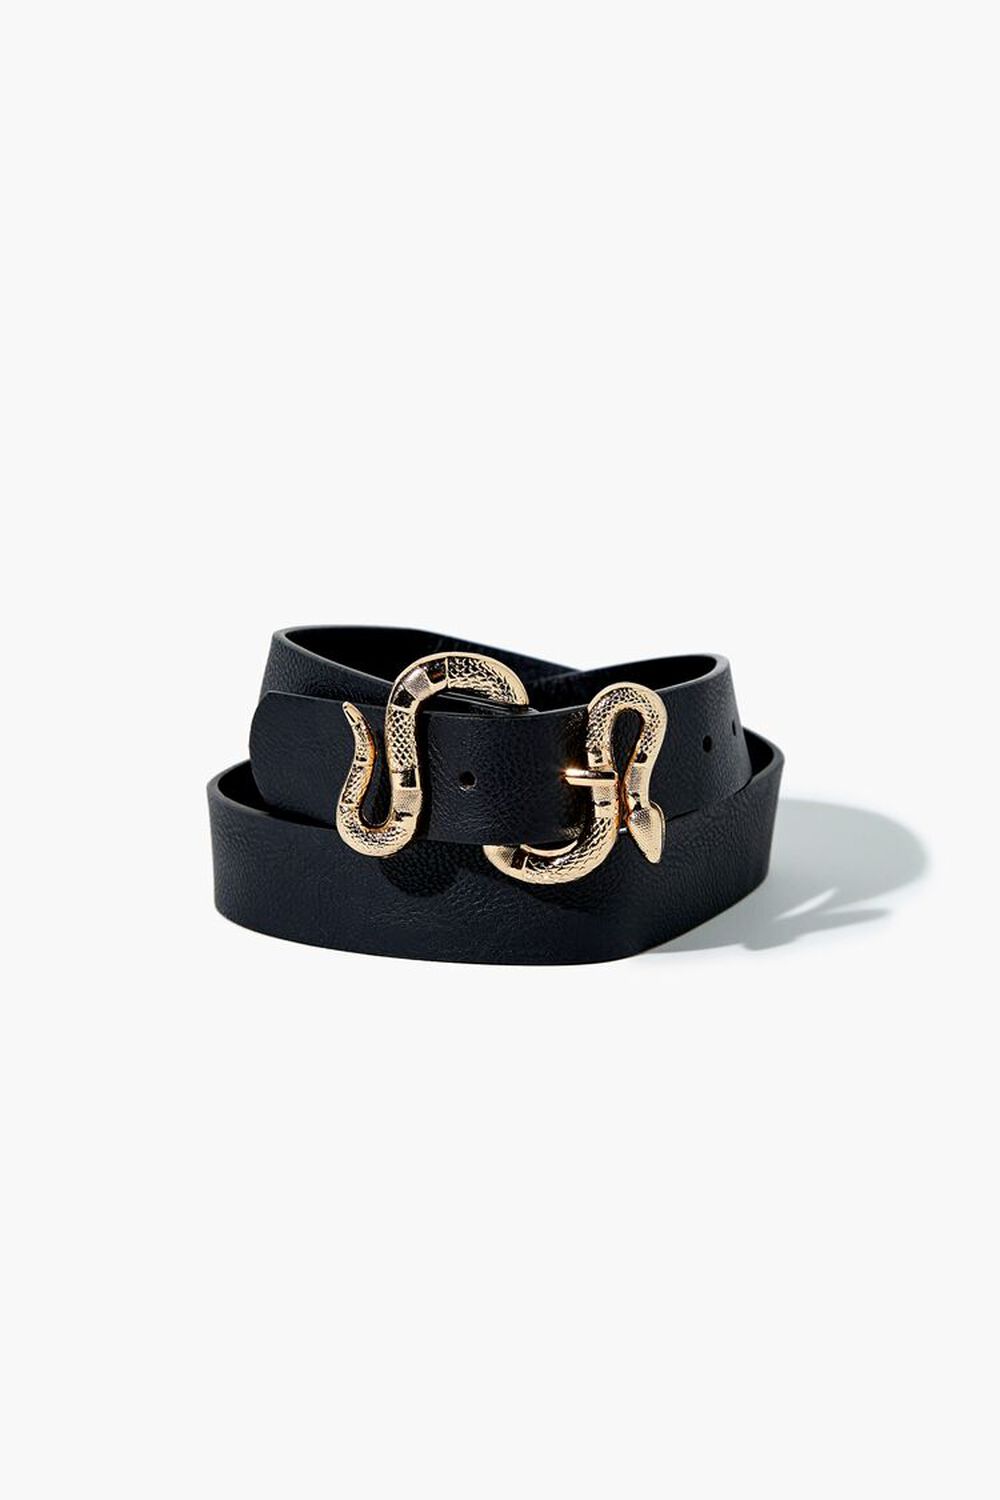 BLACK/GOLD Faux Leather Snake Buckle Belt, image 2